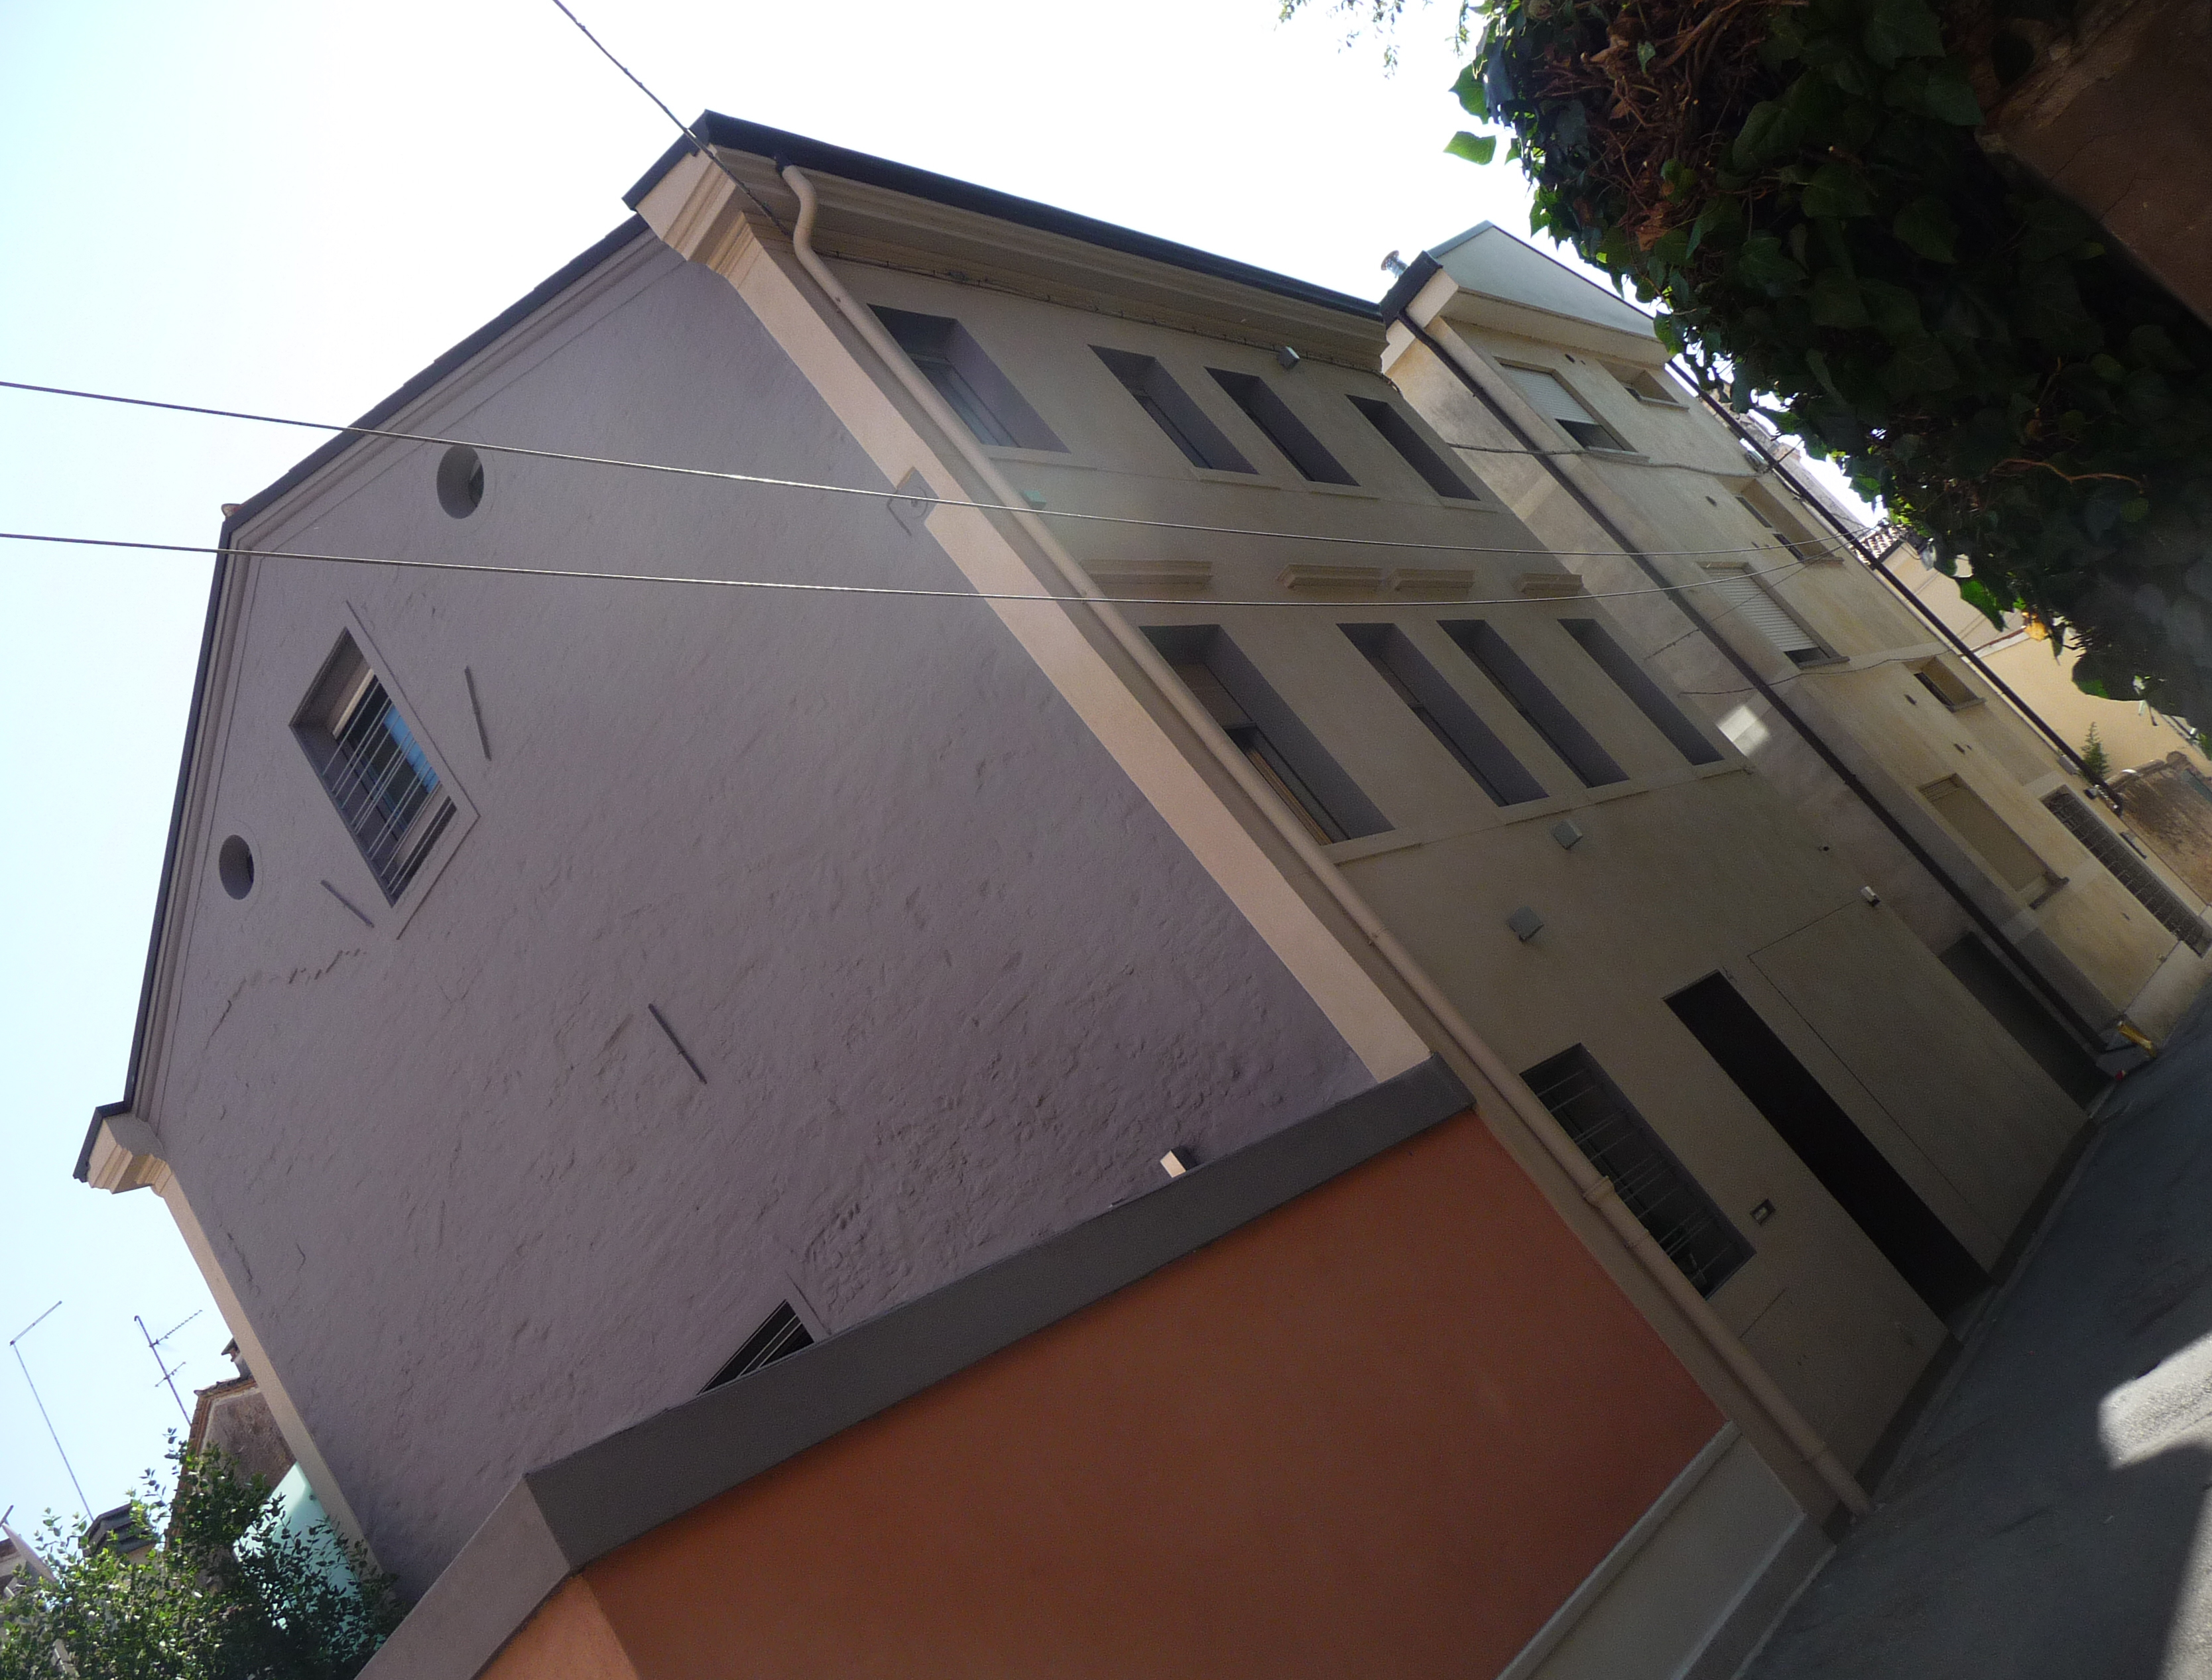 Immobile di Vicolo del Vento (casa, pubblica) - Treviso (TV) 